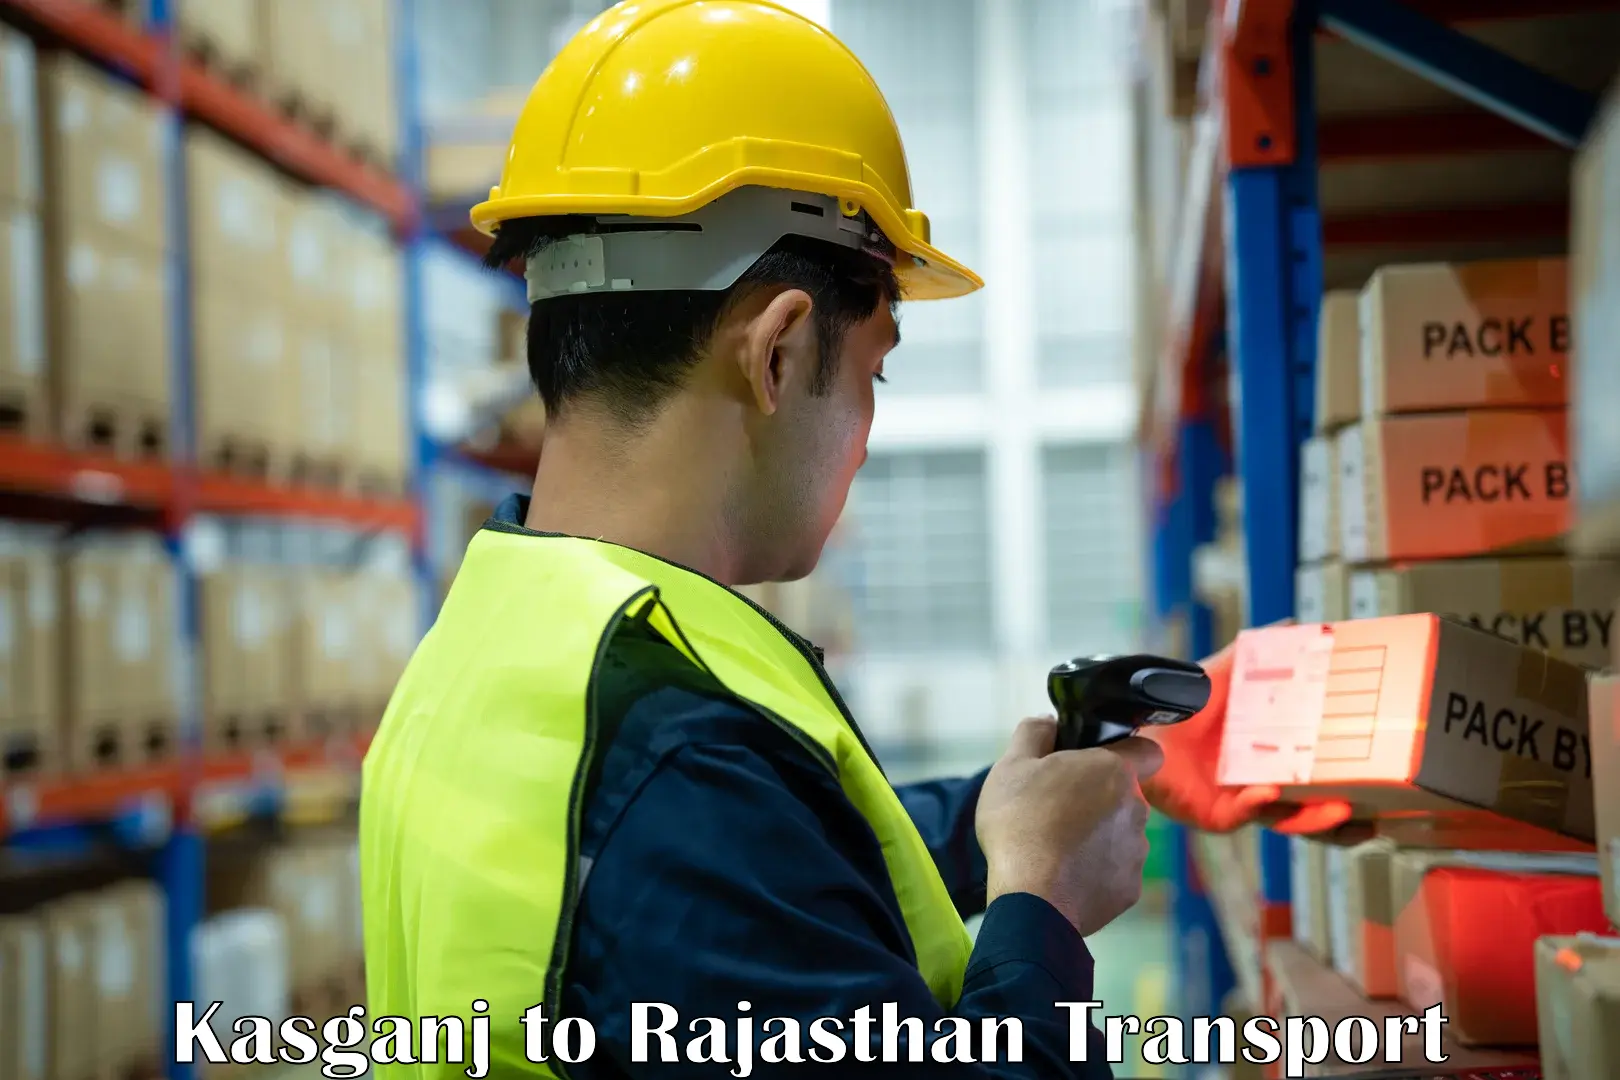 Road transport online services Kasganj to Bikaner